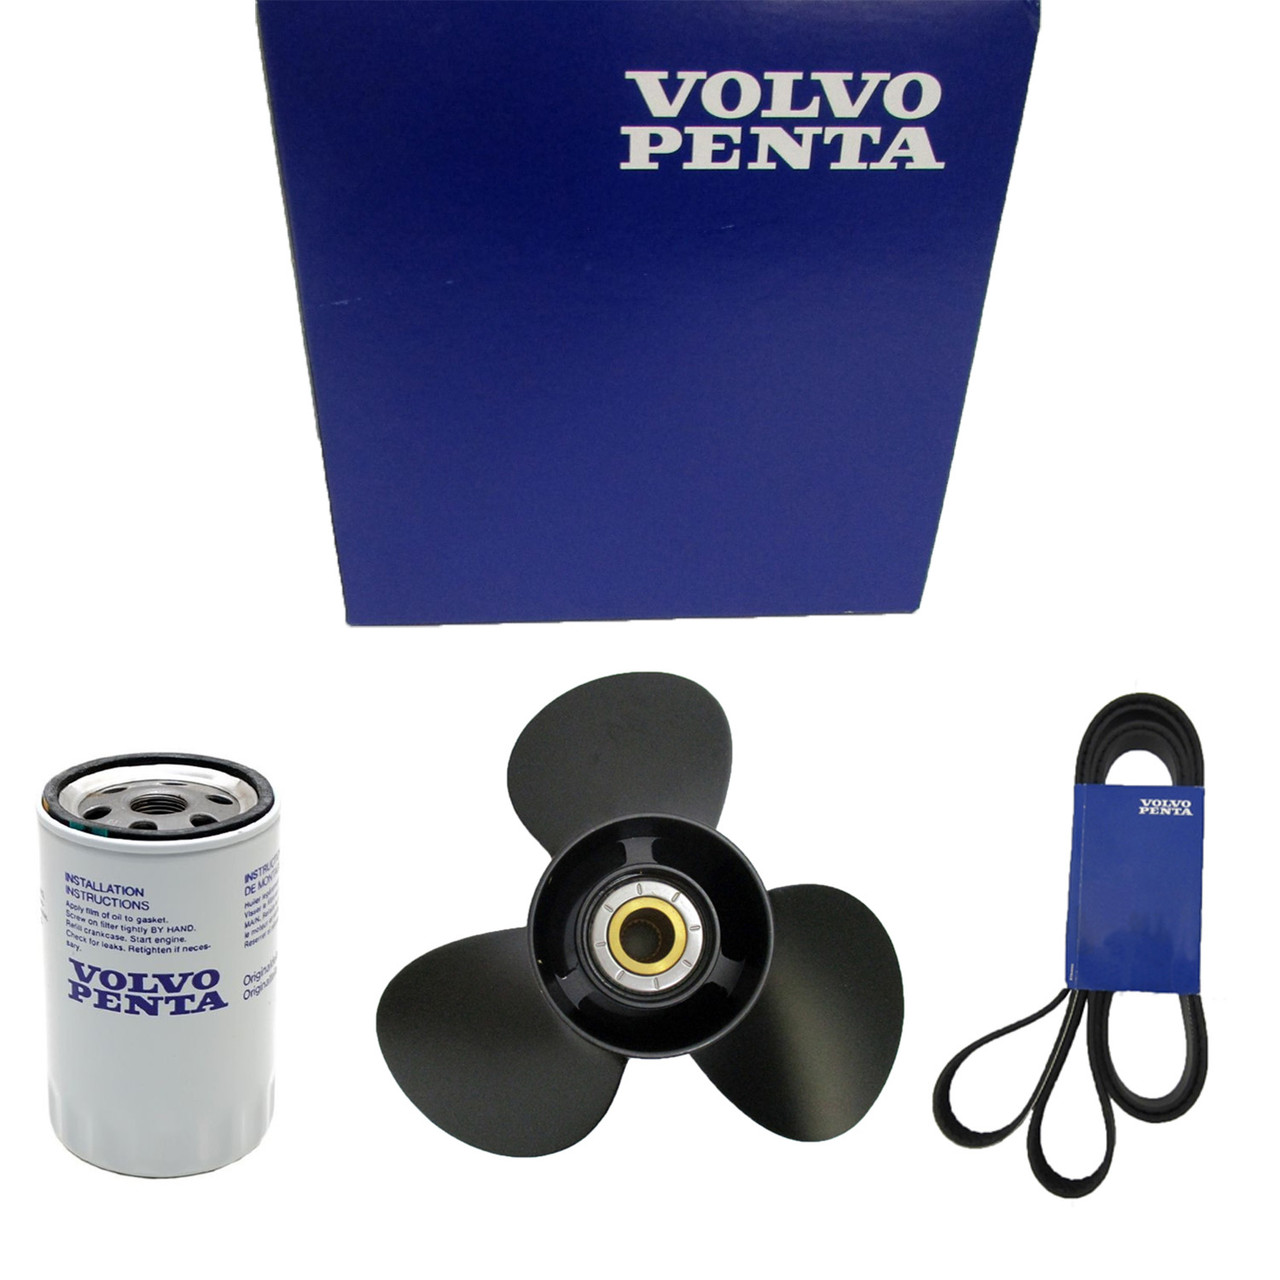 Volvo Penta New OEM Oil Filter, 23935461